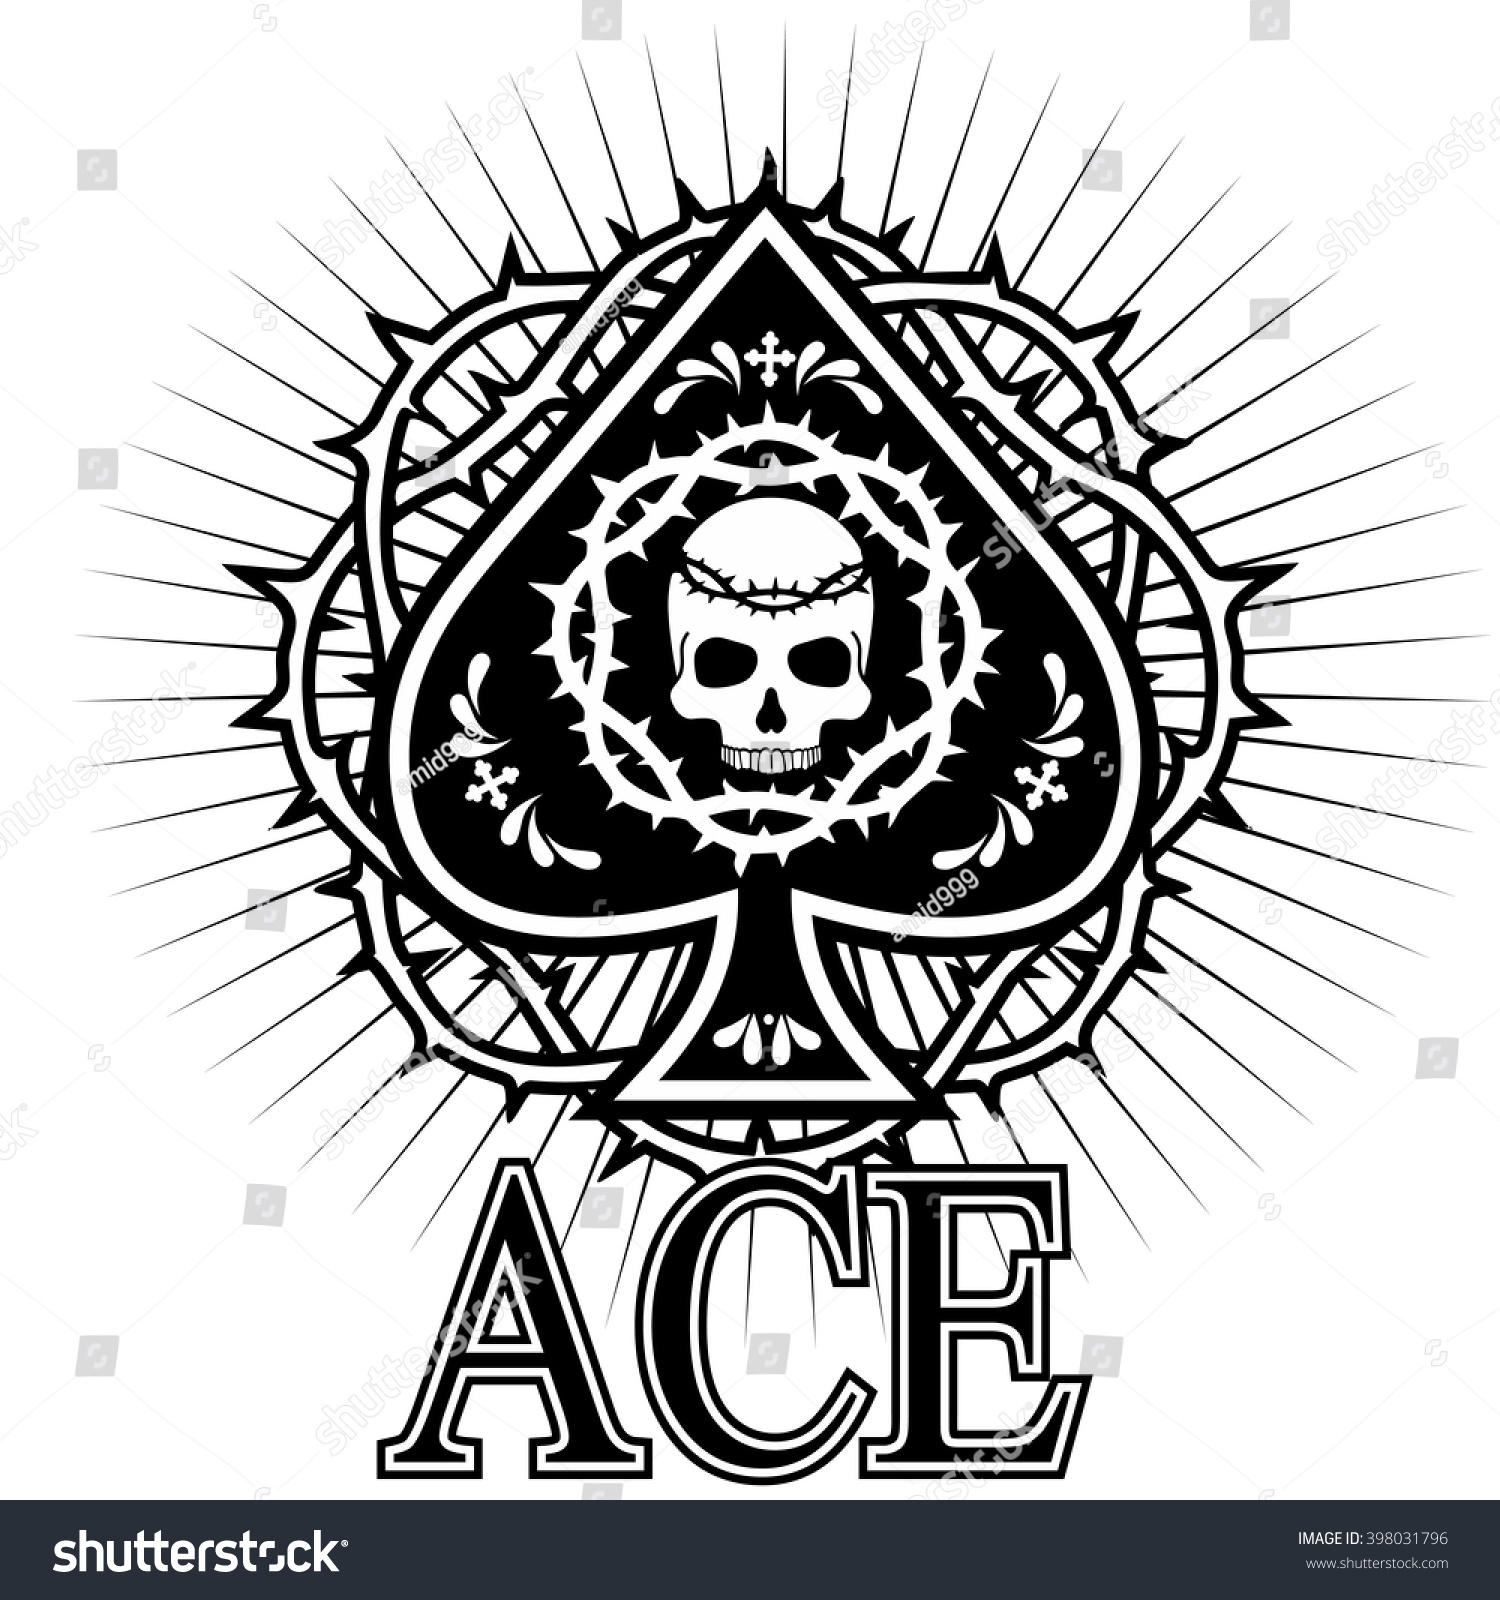 Ace Spades Skull Stock Vector 398031796 - Shutterstock